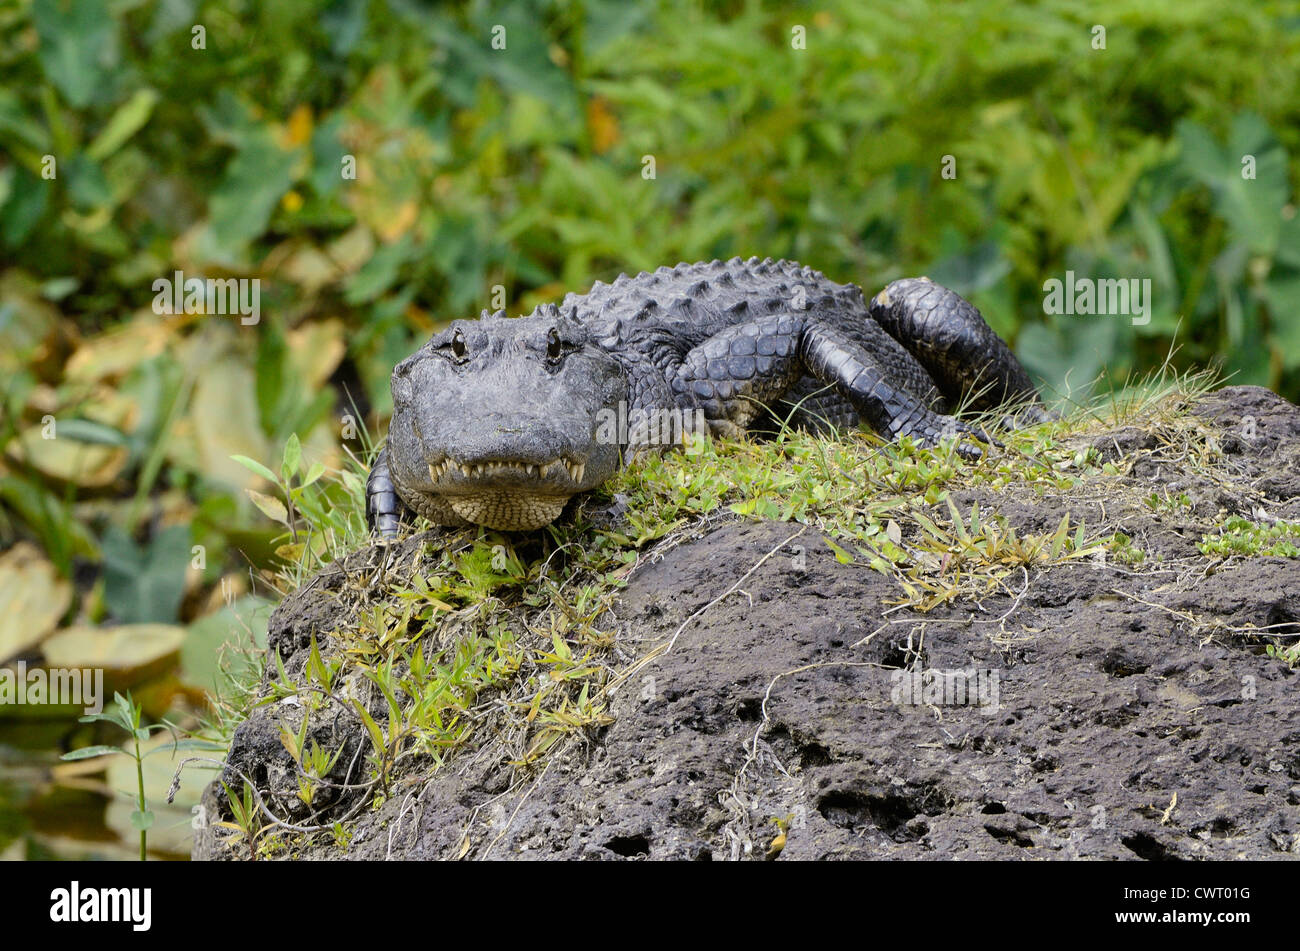 American alligator (Alligator mississippiensis) stalking Stock Photo